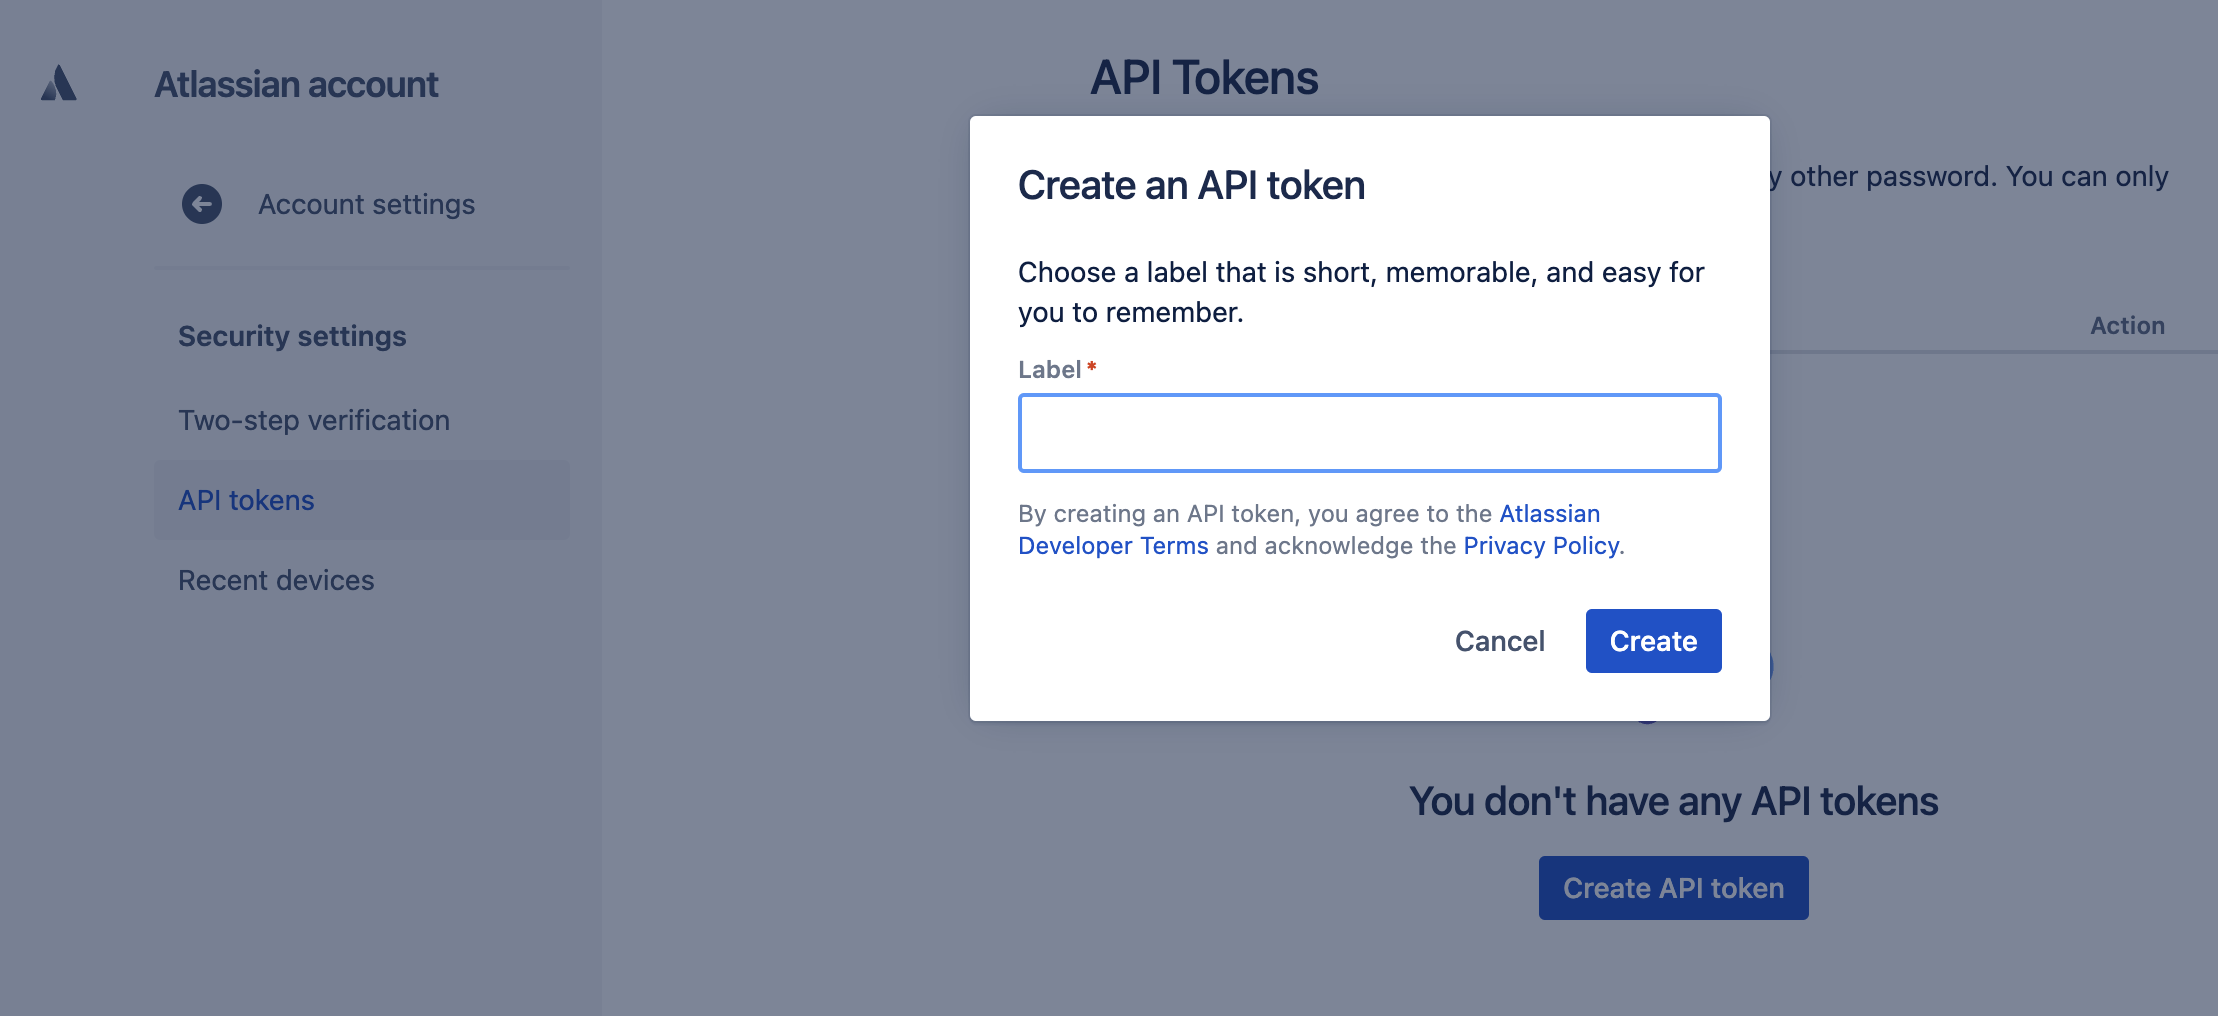 create_an_API_token.png